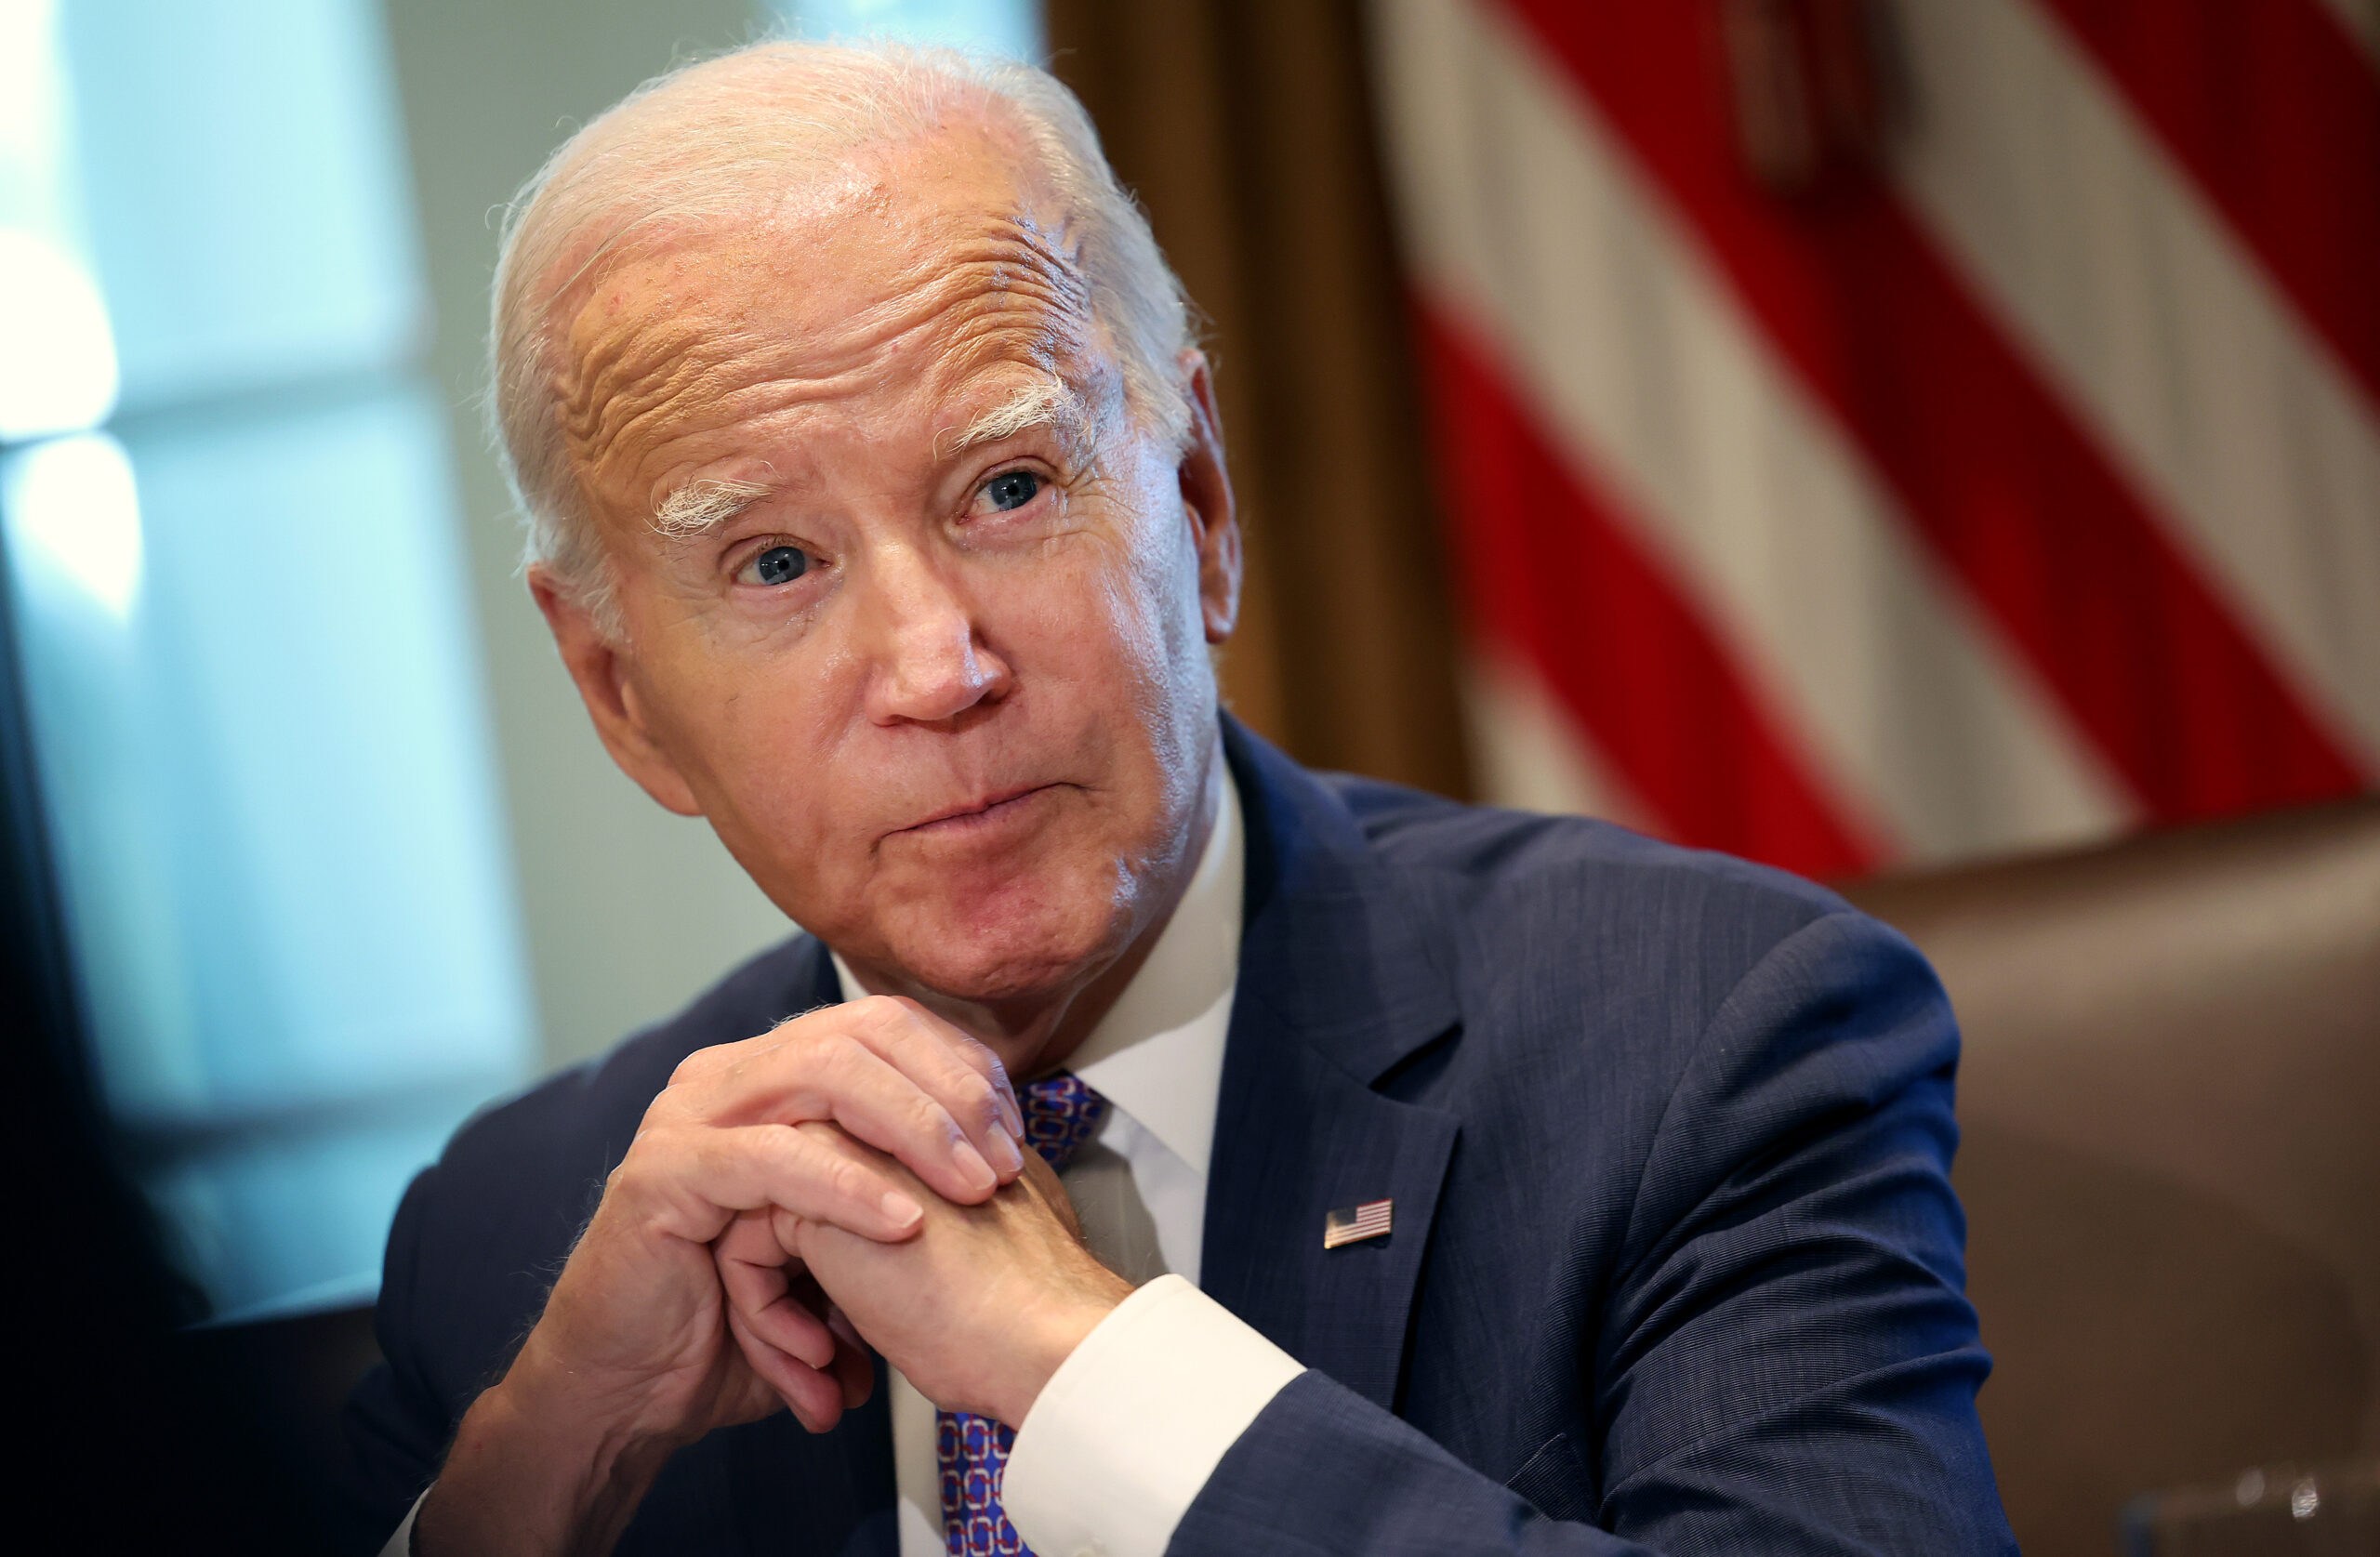 Joe stimulé par l’économie rugissante de Biden.  Pas vraiment.